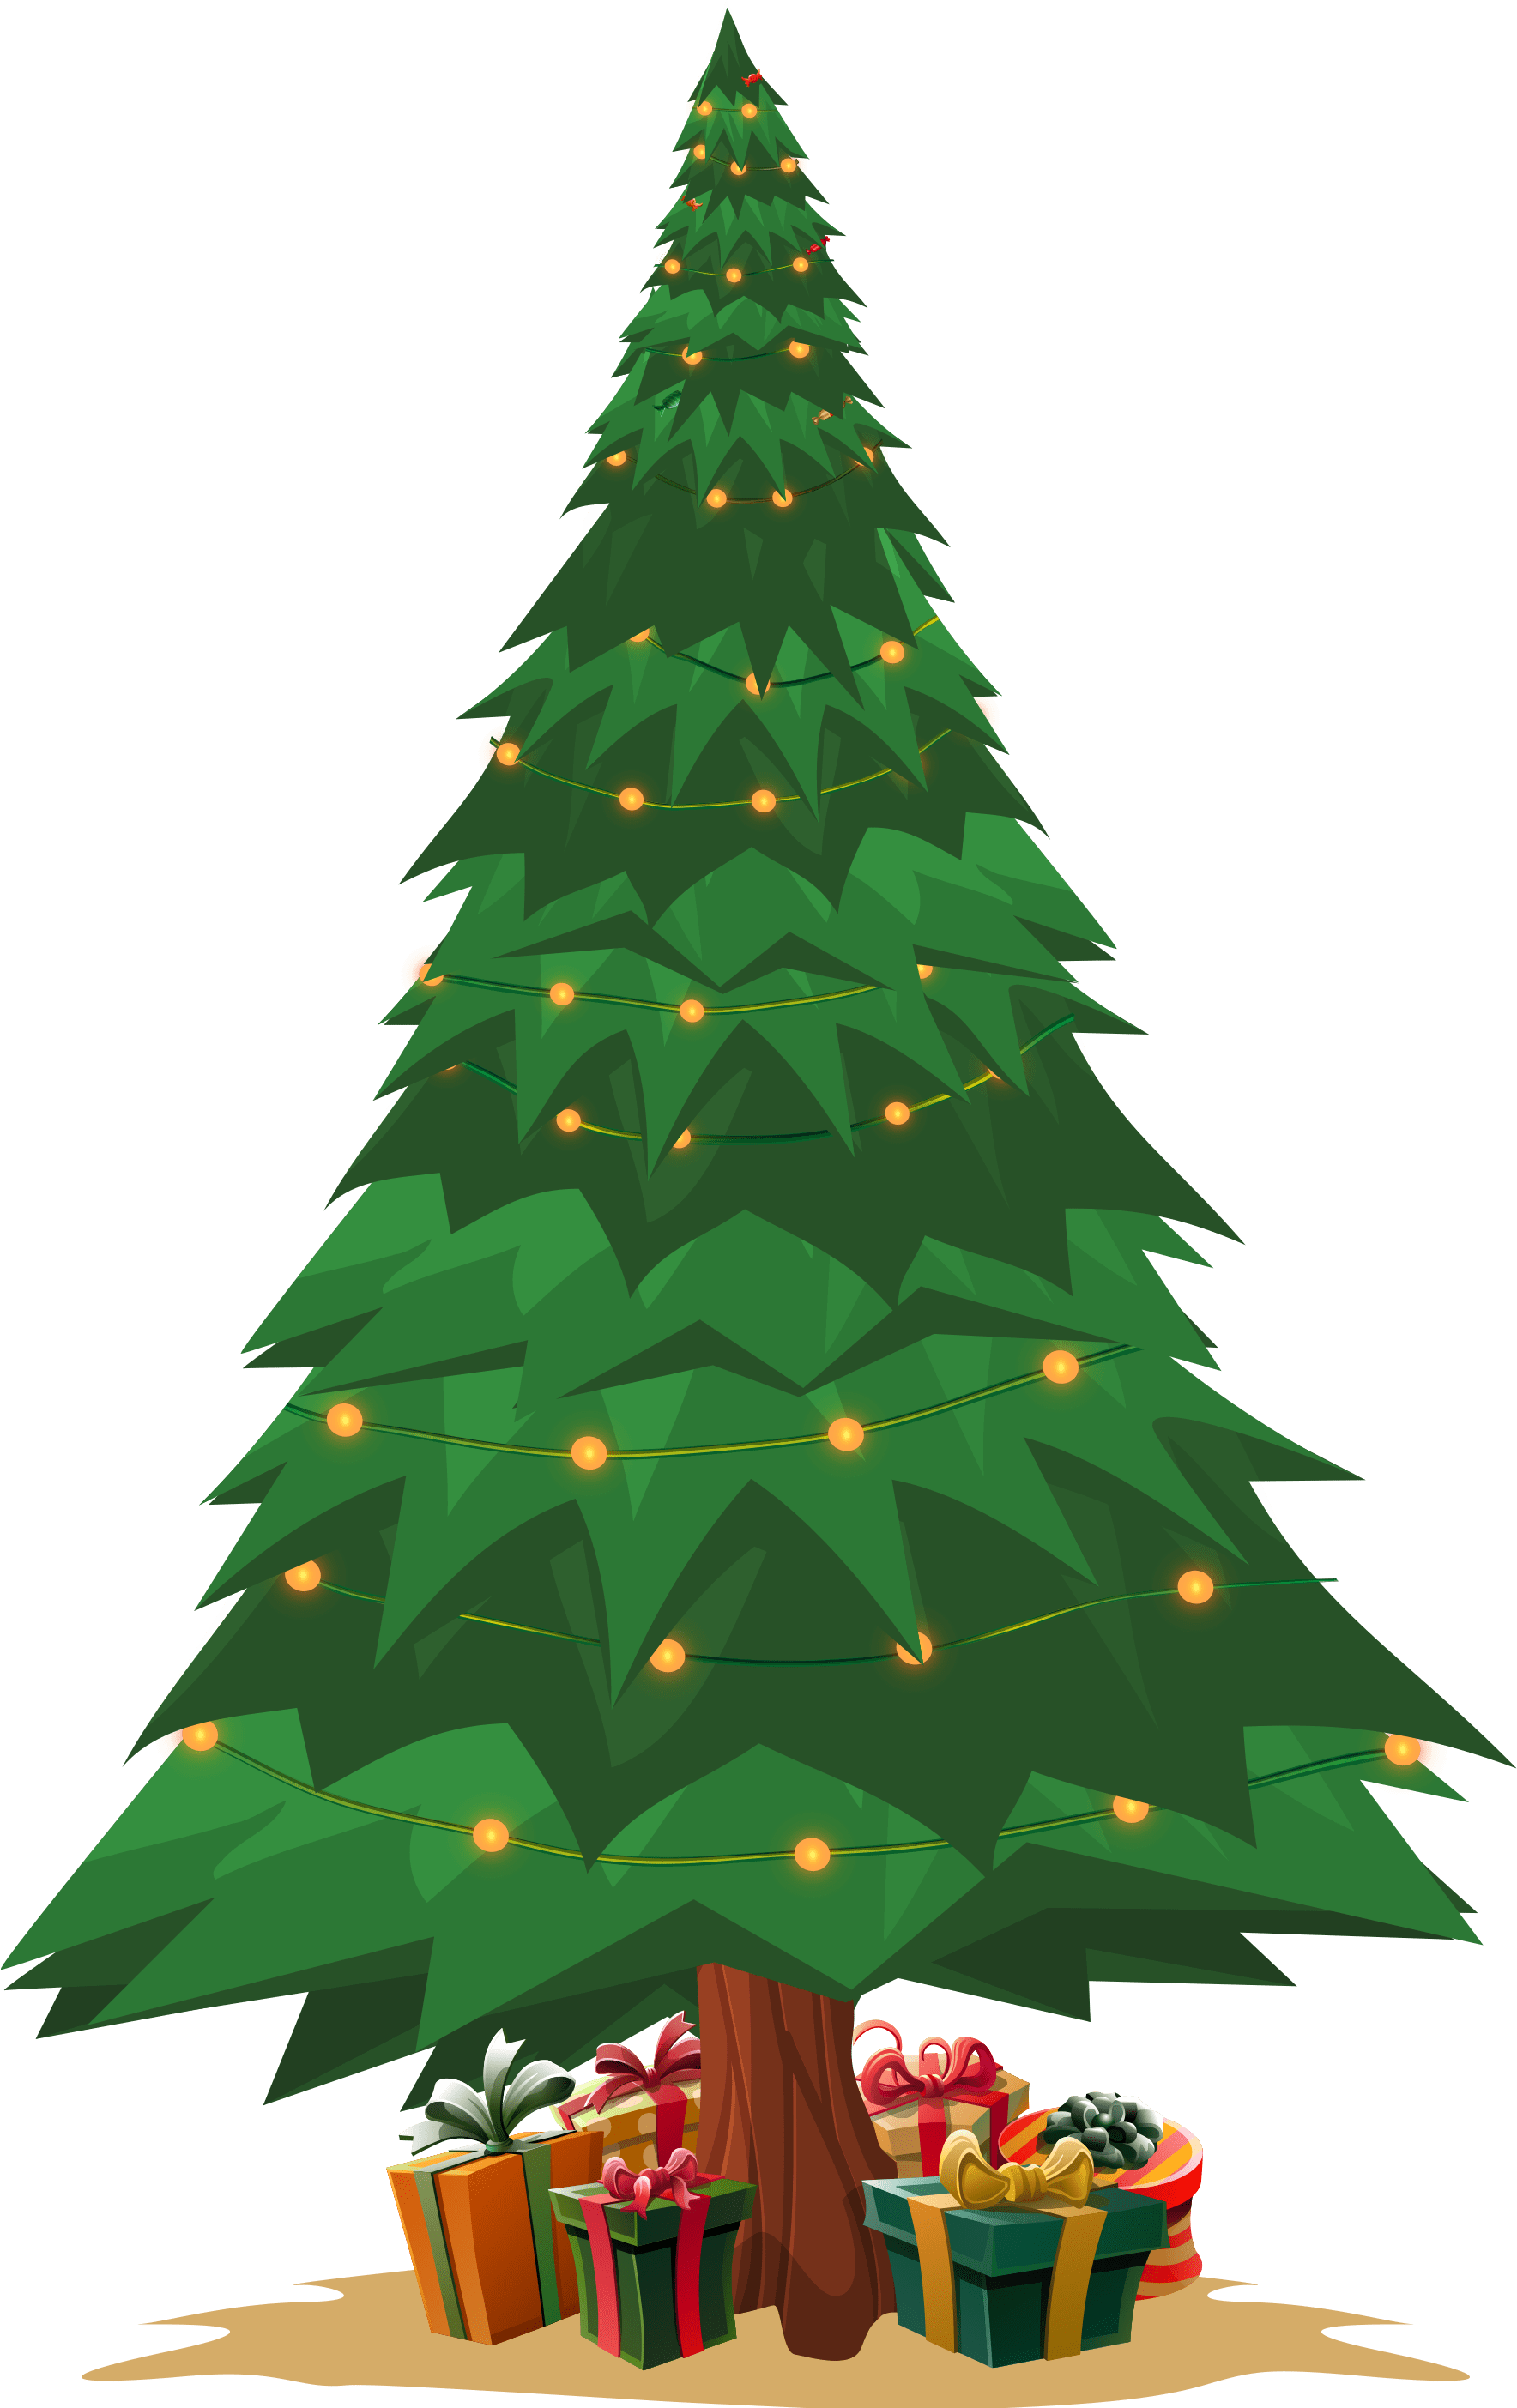 Tree-nolights-nostar-min LP Christmas 2020 - Fair Go Casino